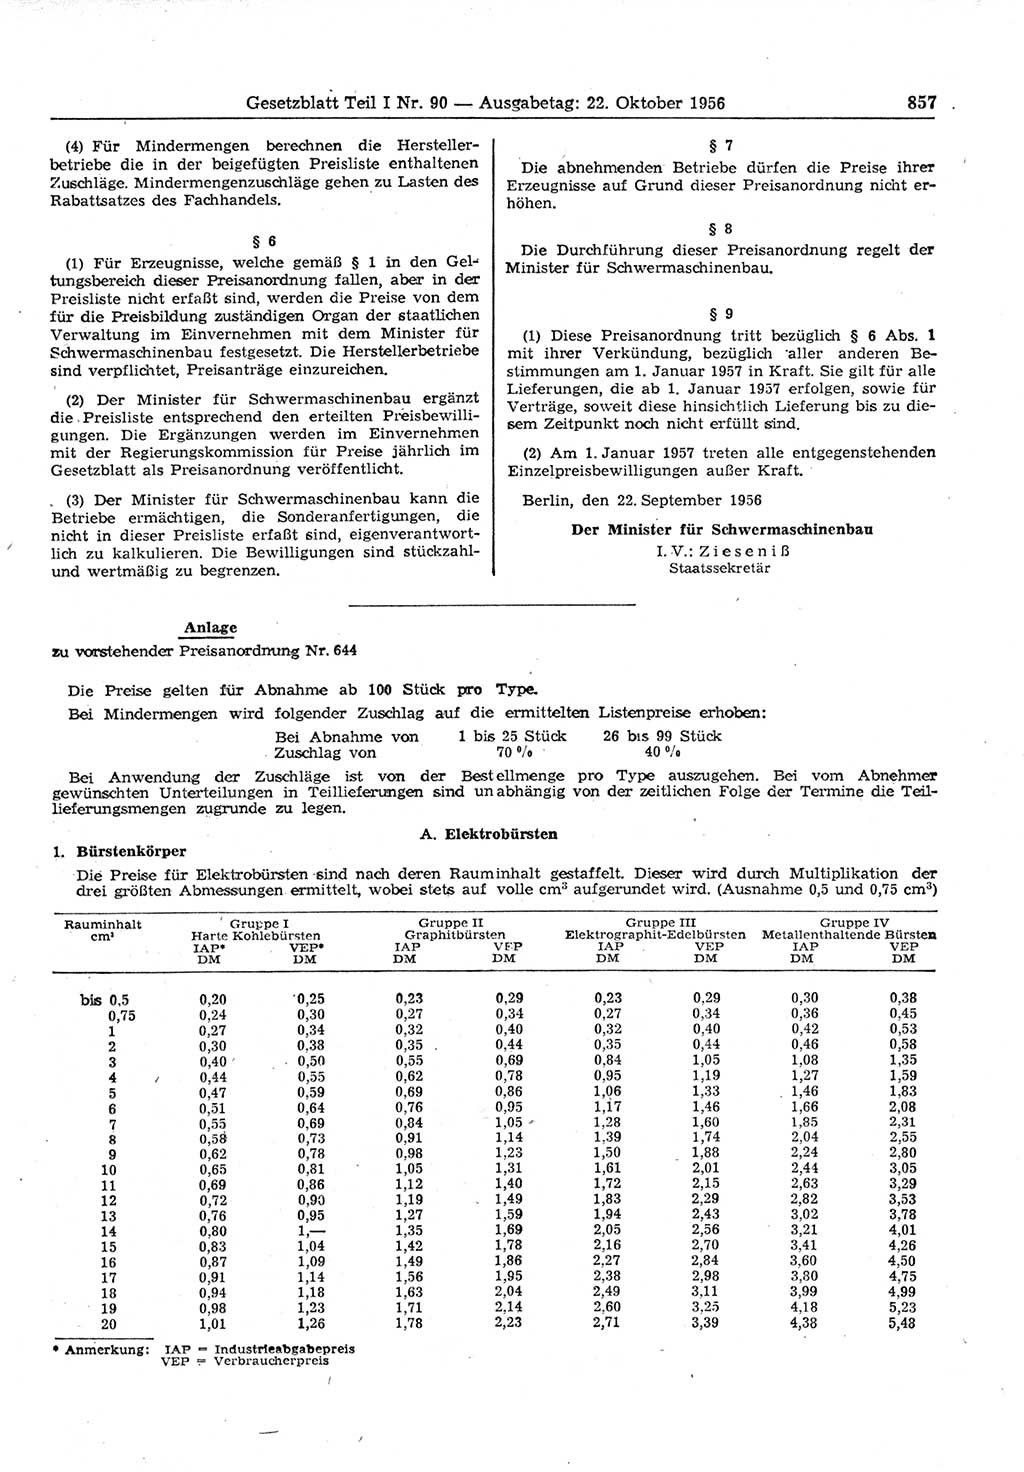 Gesetzblatt (GBl.) der Deutschen Demokratischen Republik (DDR) Teil Ⅰ 1956, Seite 857 (GBl. DDR Ⅰ 1956, S. 857)